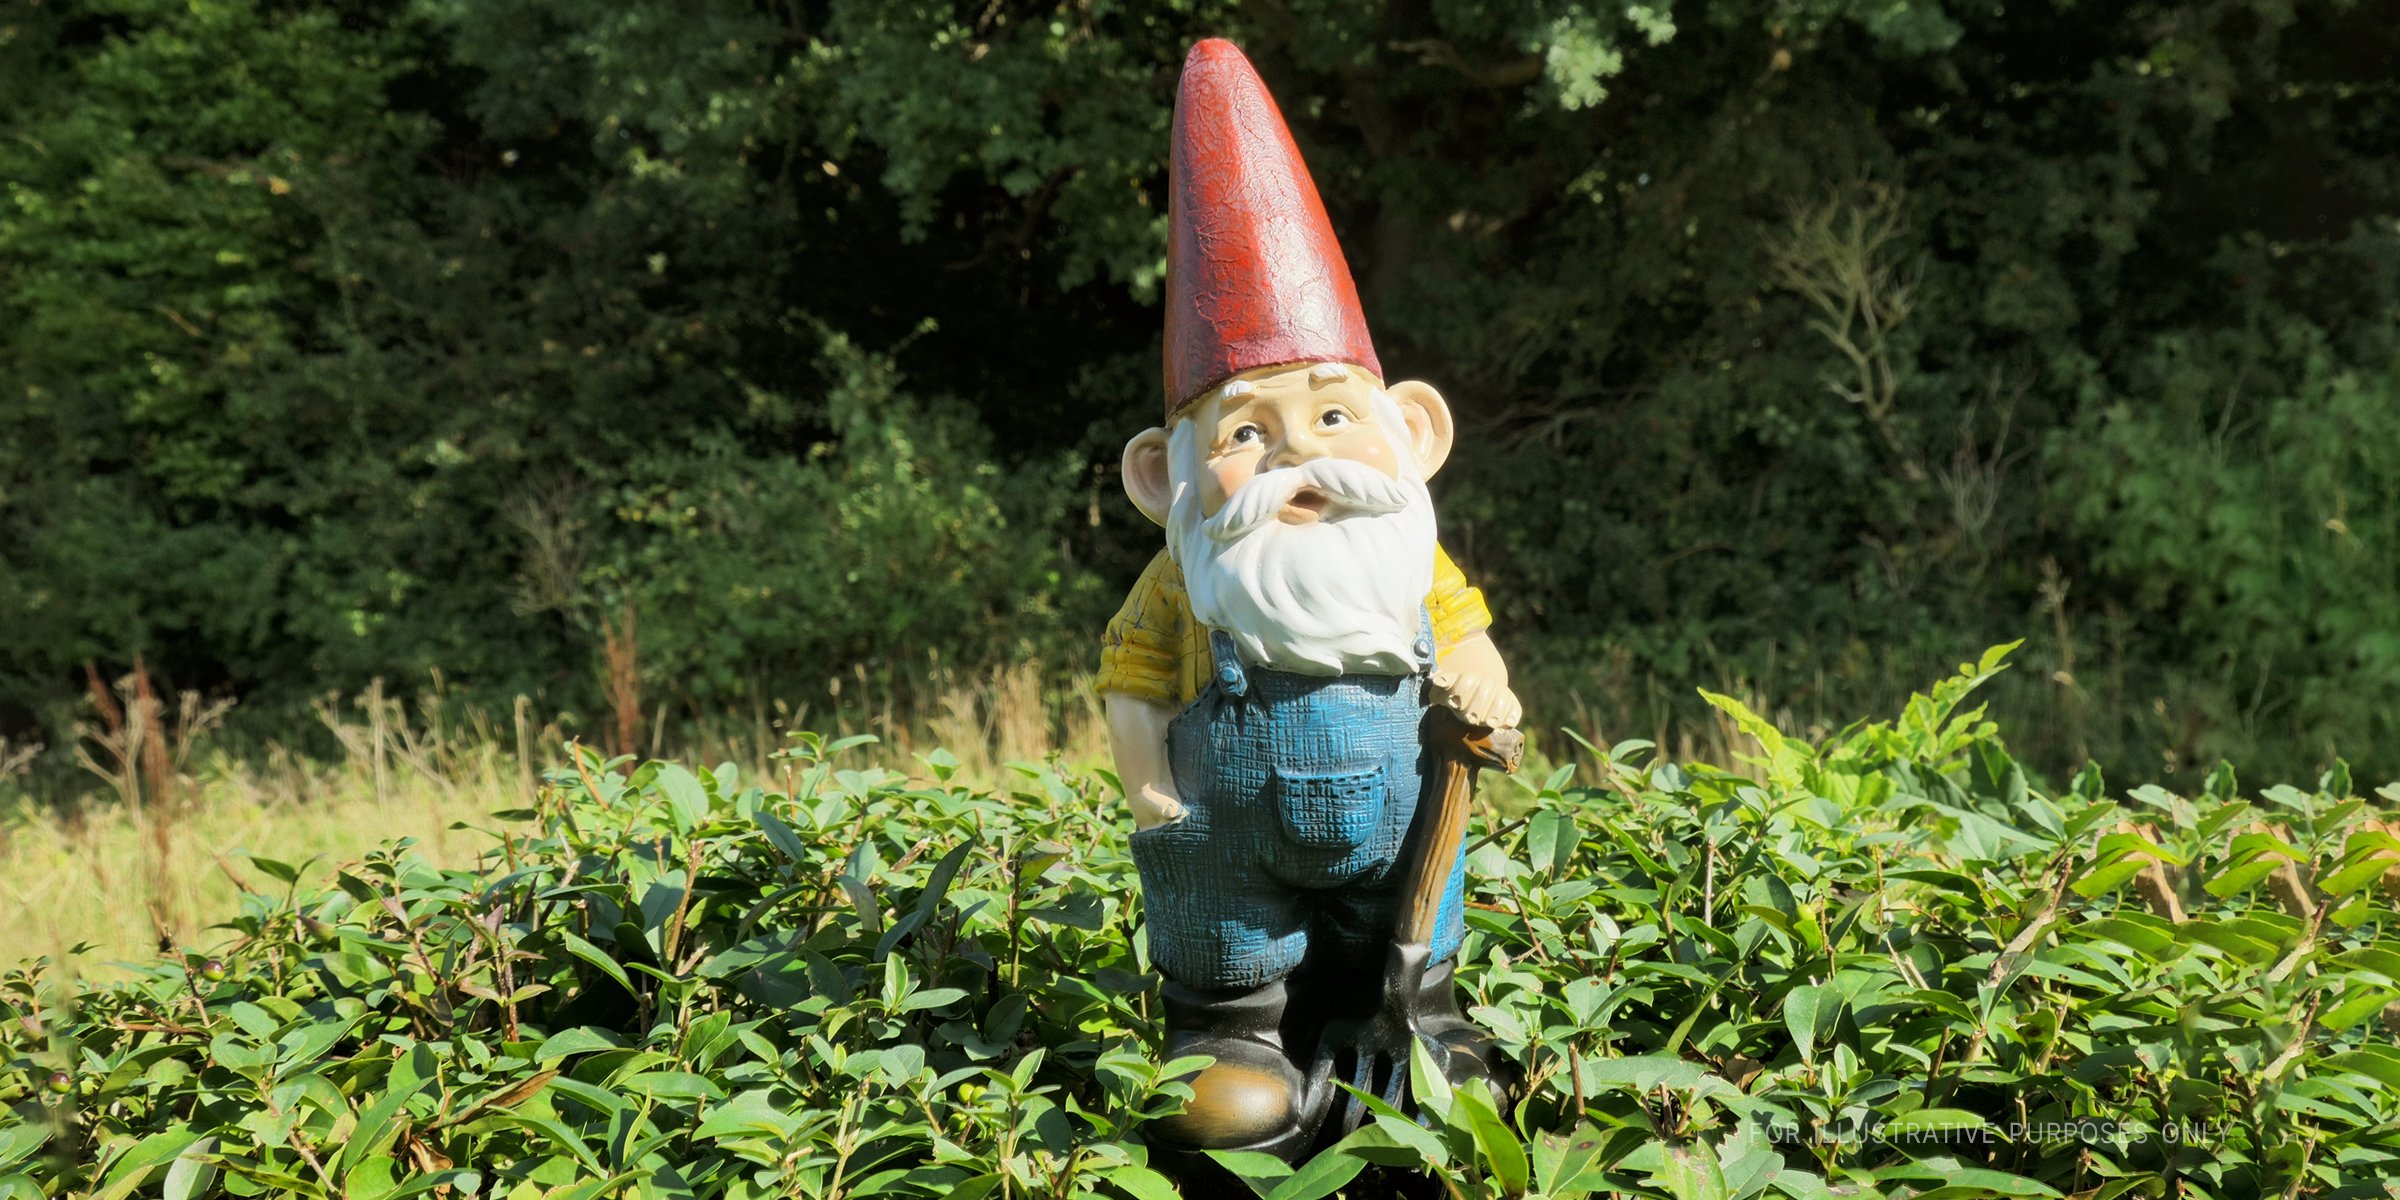 A Garden Gnome. | Source: Shutterstock